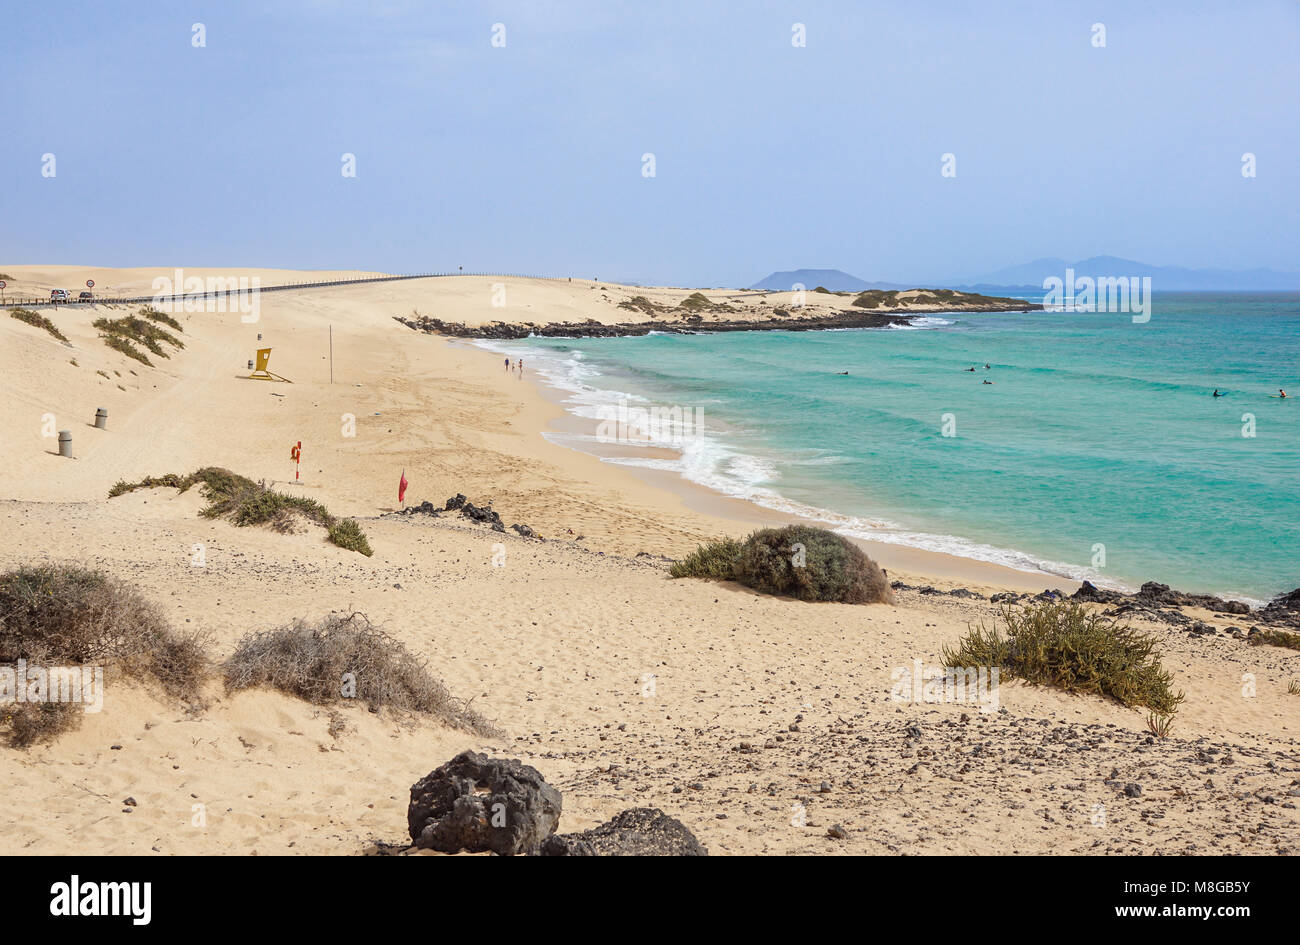 Blick auf den berühmten Strand Playa de Jandia - Playa de Sotavento Playa - Lagune auf der Kanarischen Insel Fuerteventura, Spanien. Dieser Strand gehört zu den schönsten Stränden der Welt zum Windsurfen. Stockfoto